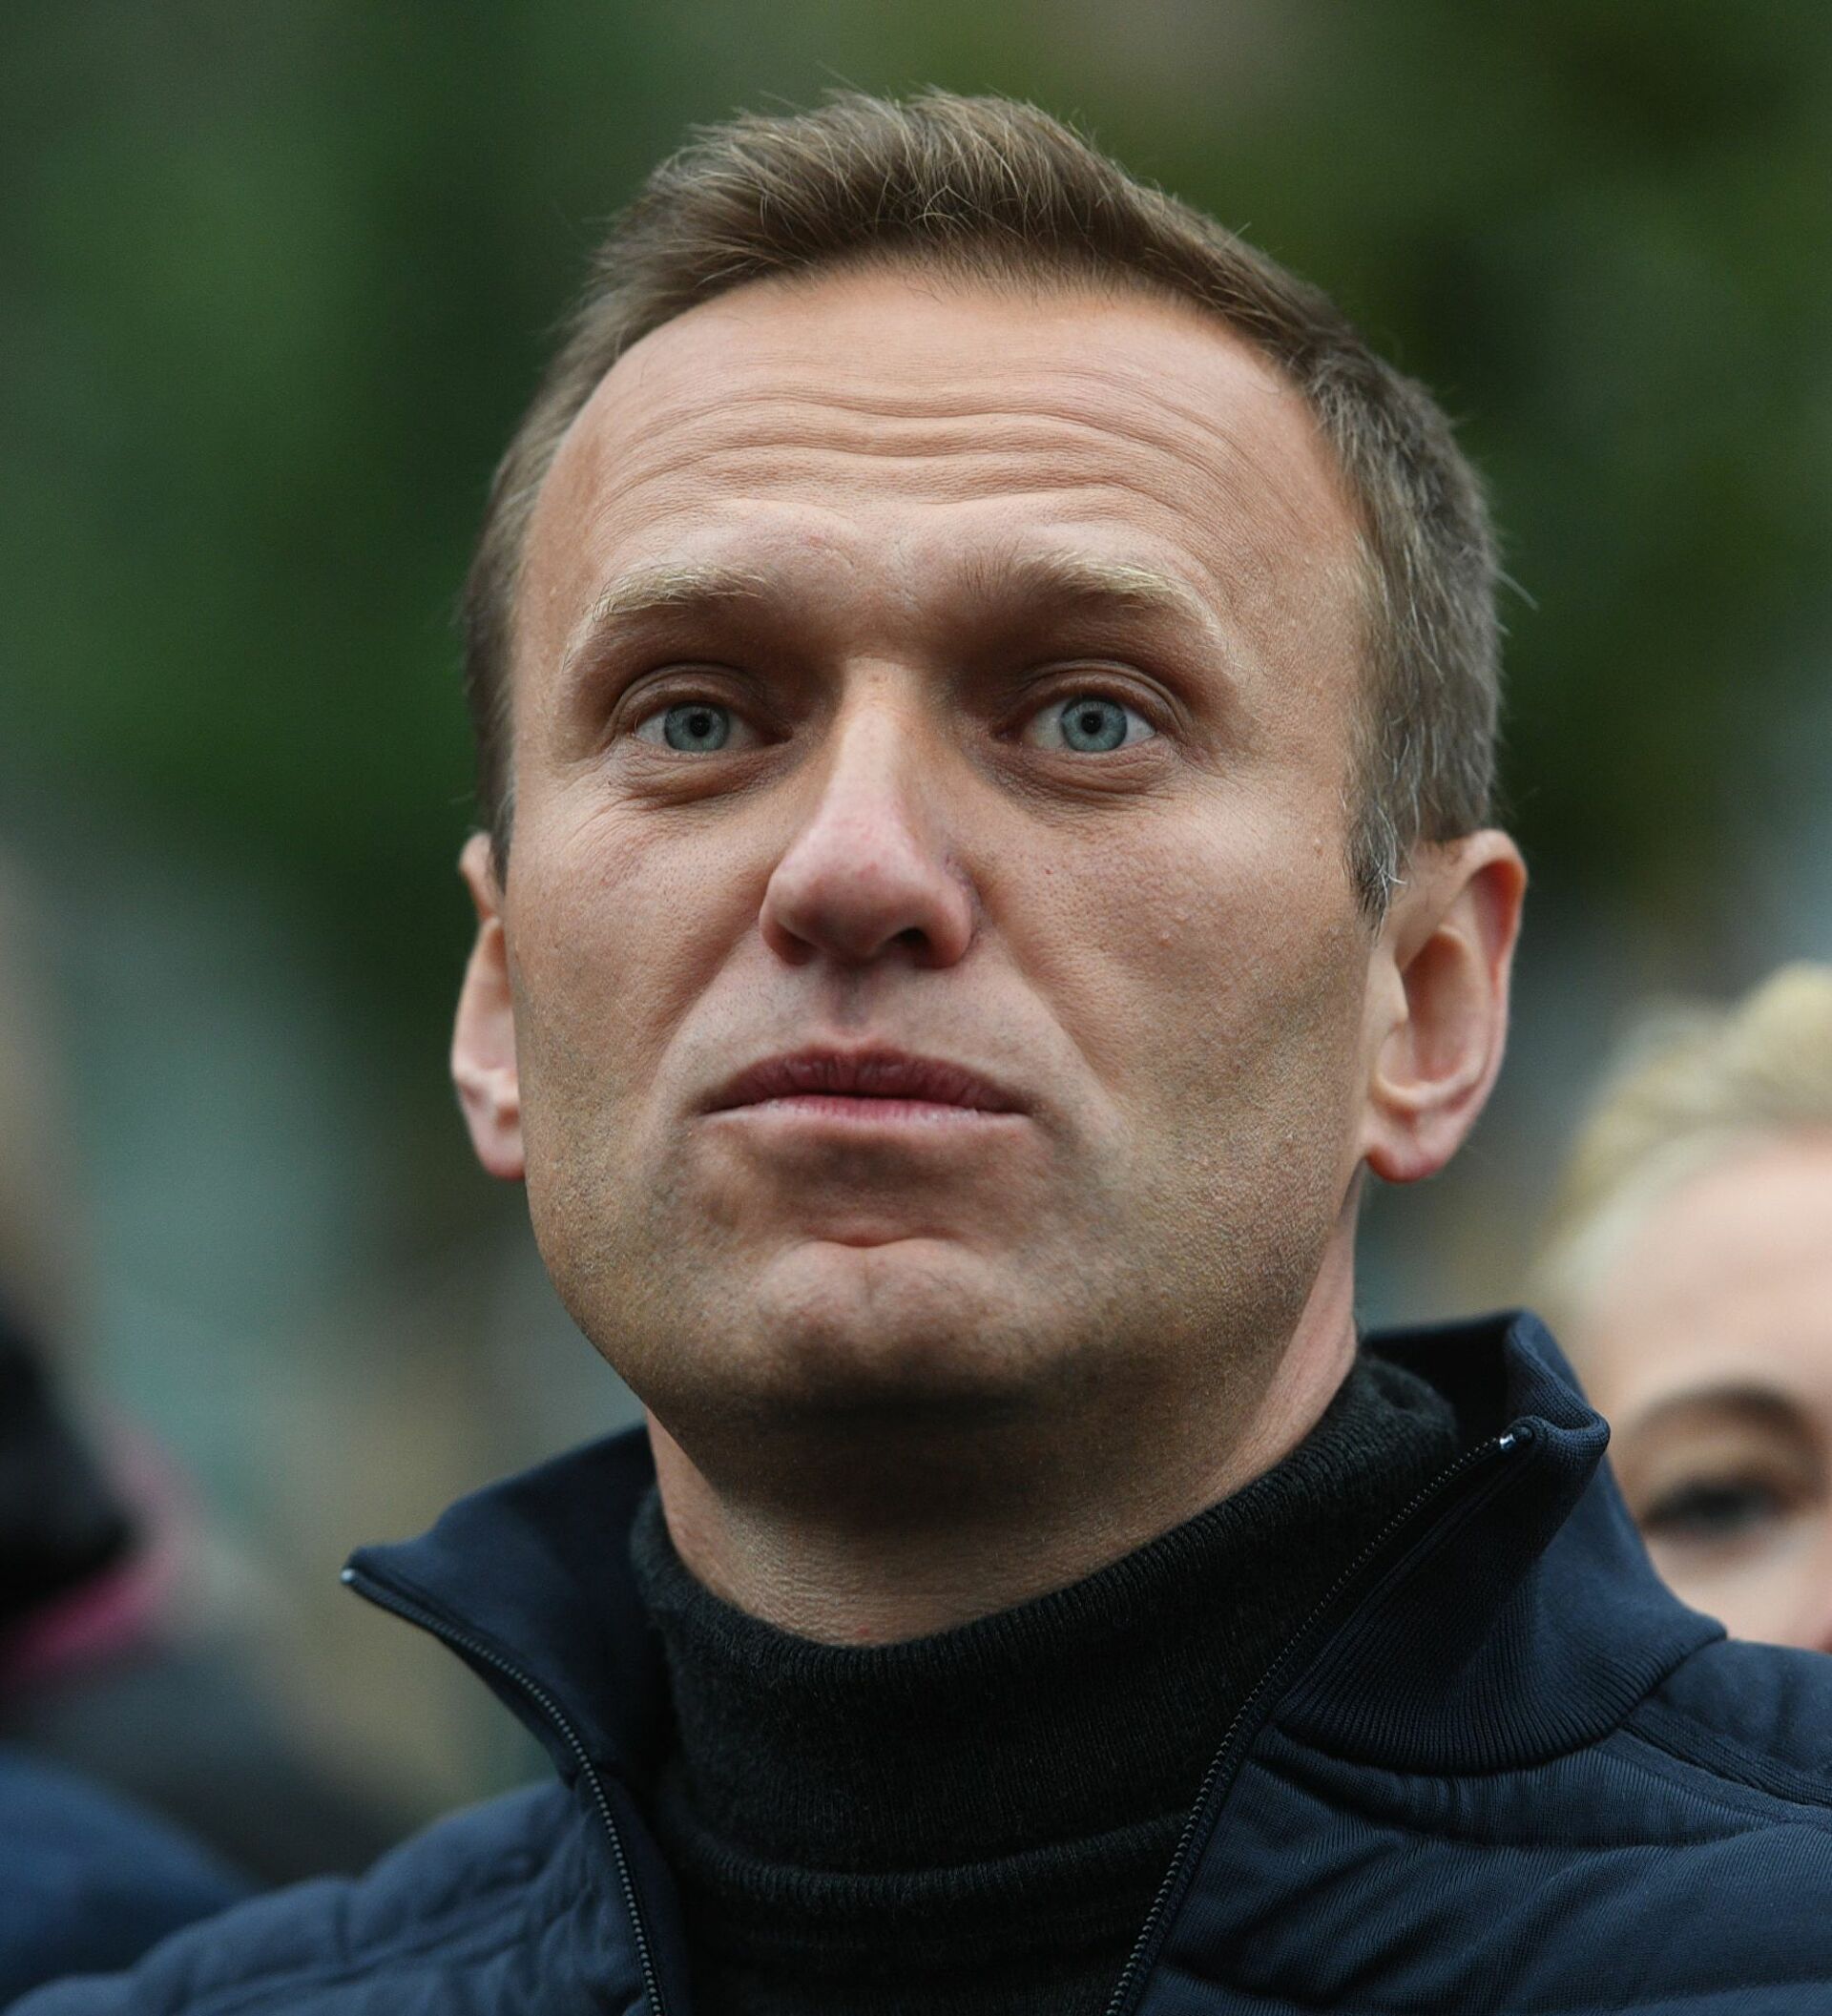 Tras huelga de hambre, opositor ruso Navalni se encuentra en recuperación